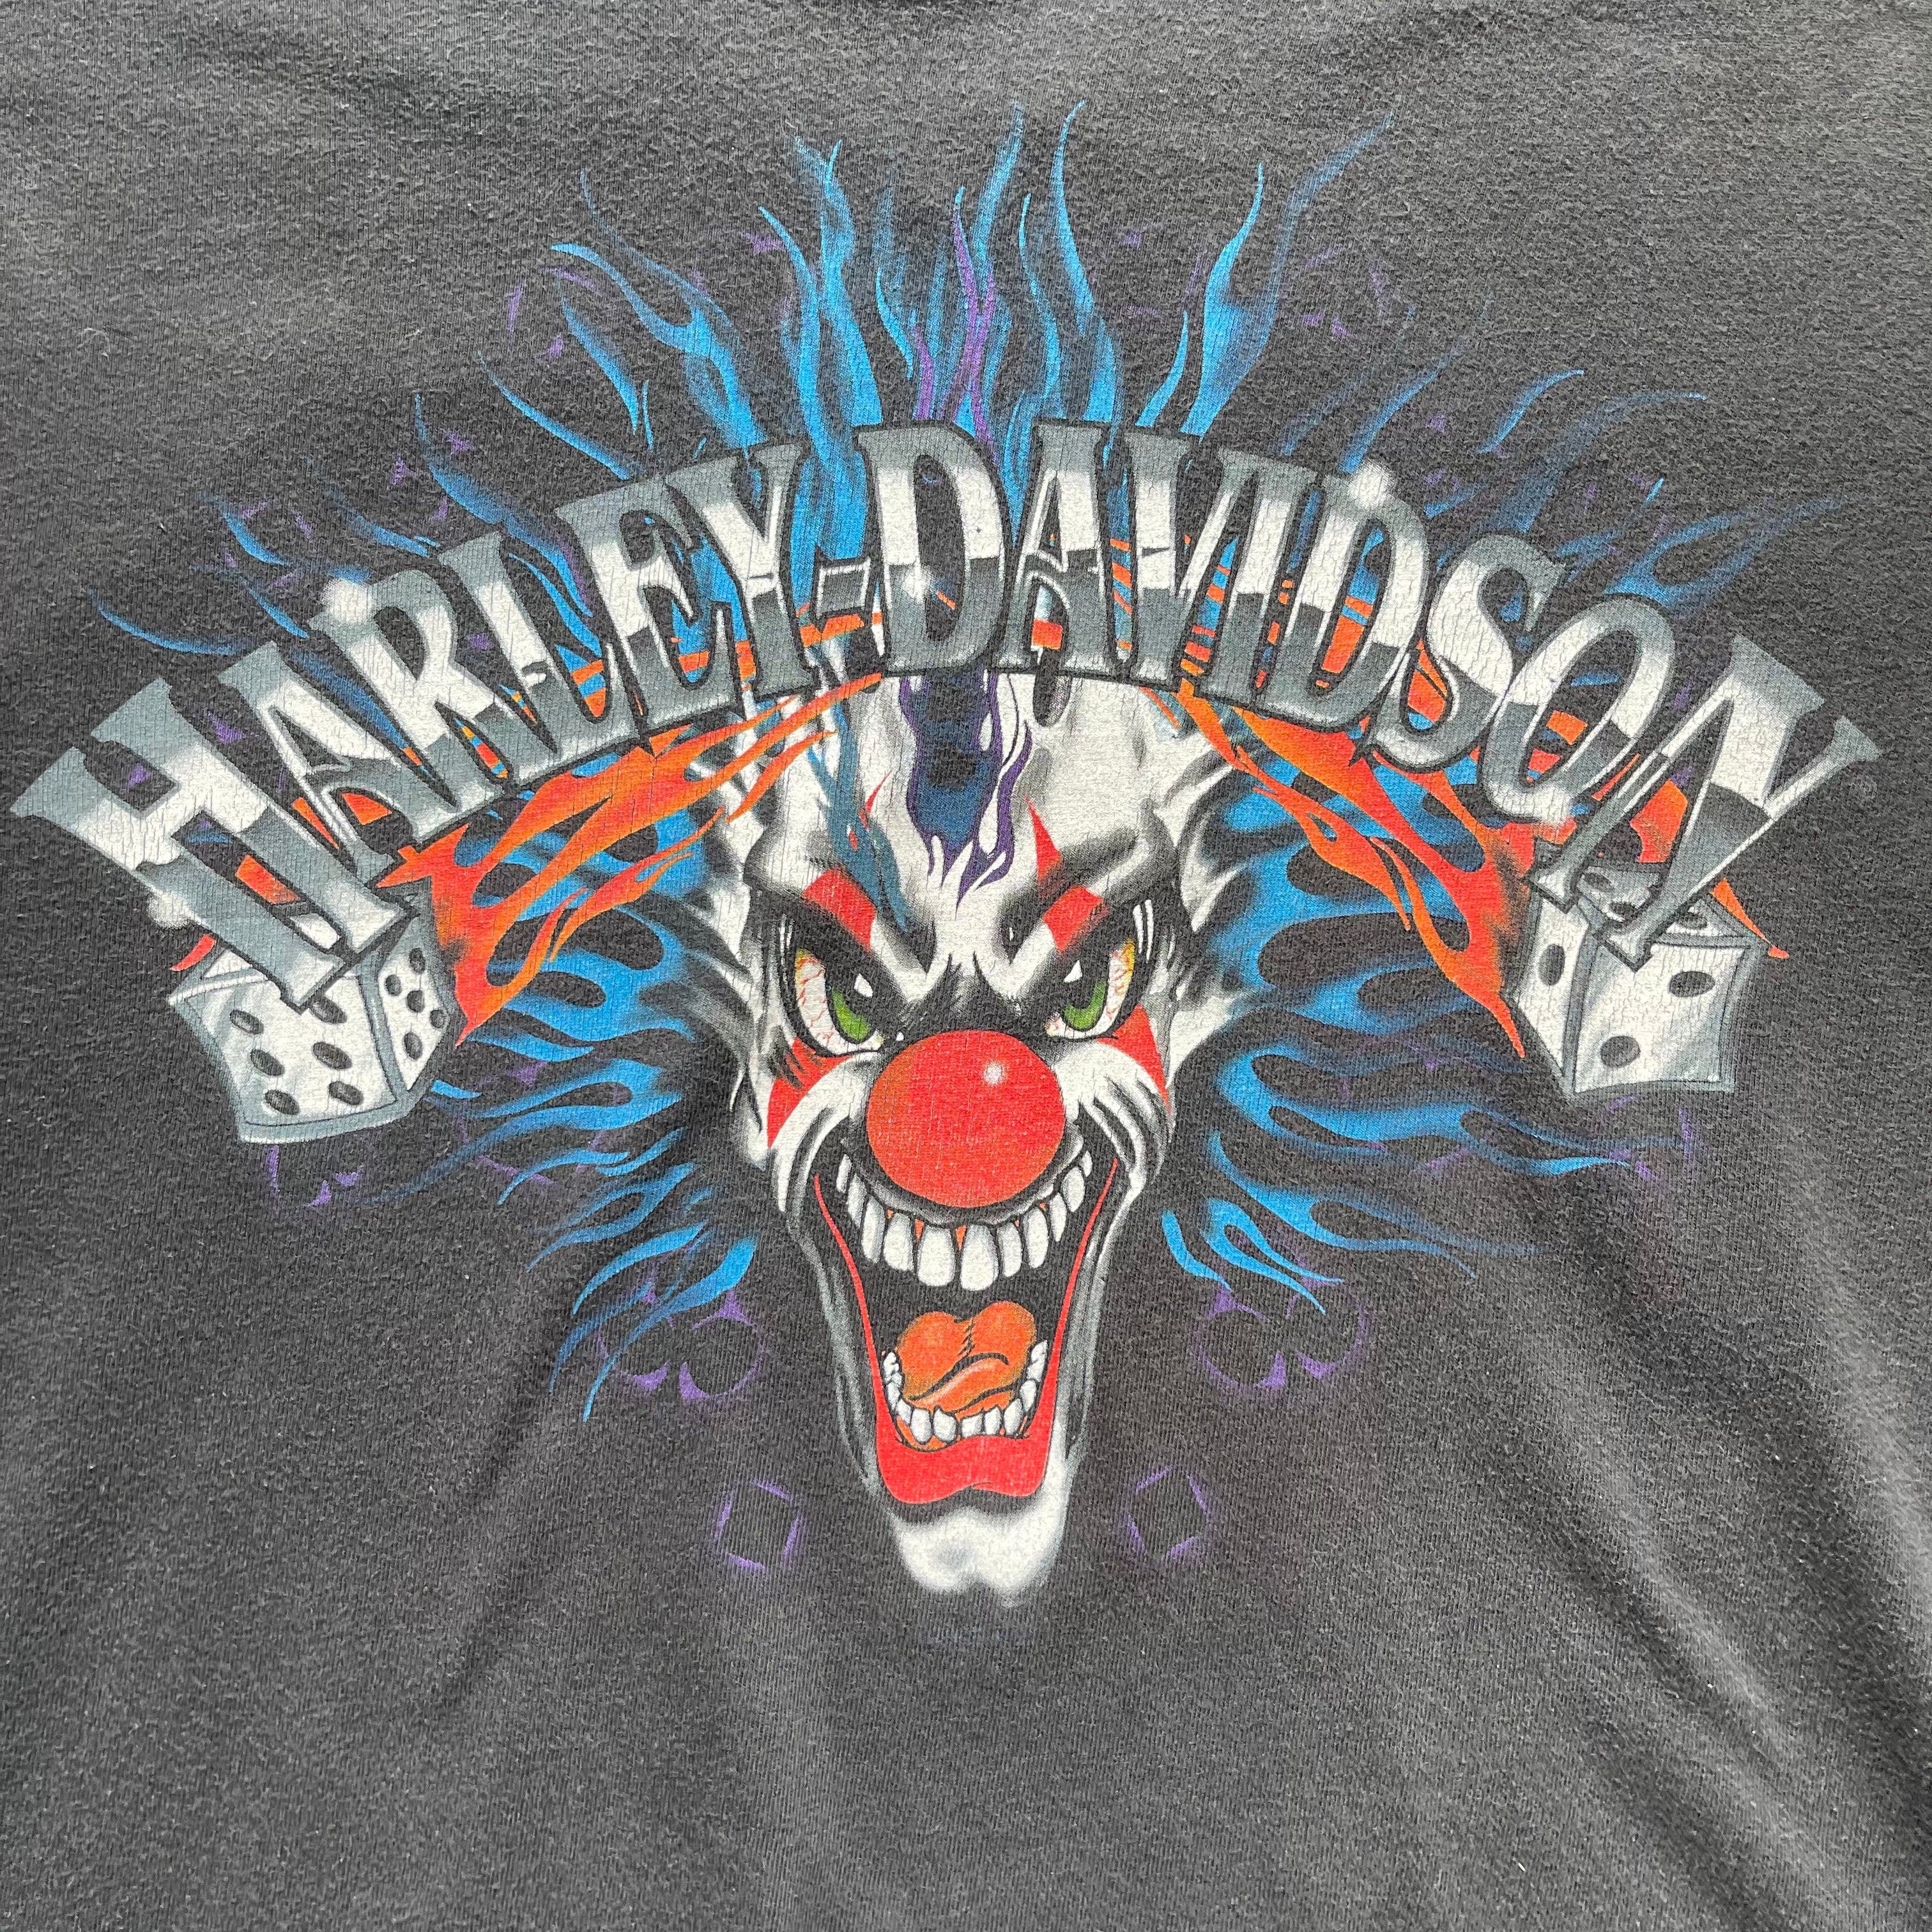 Harley Davidson Maryland, Made in USA